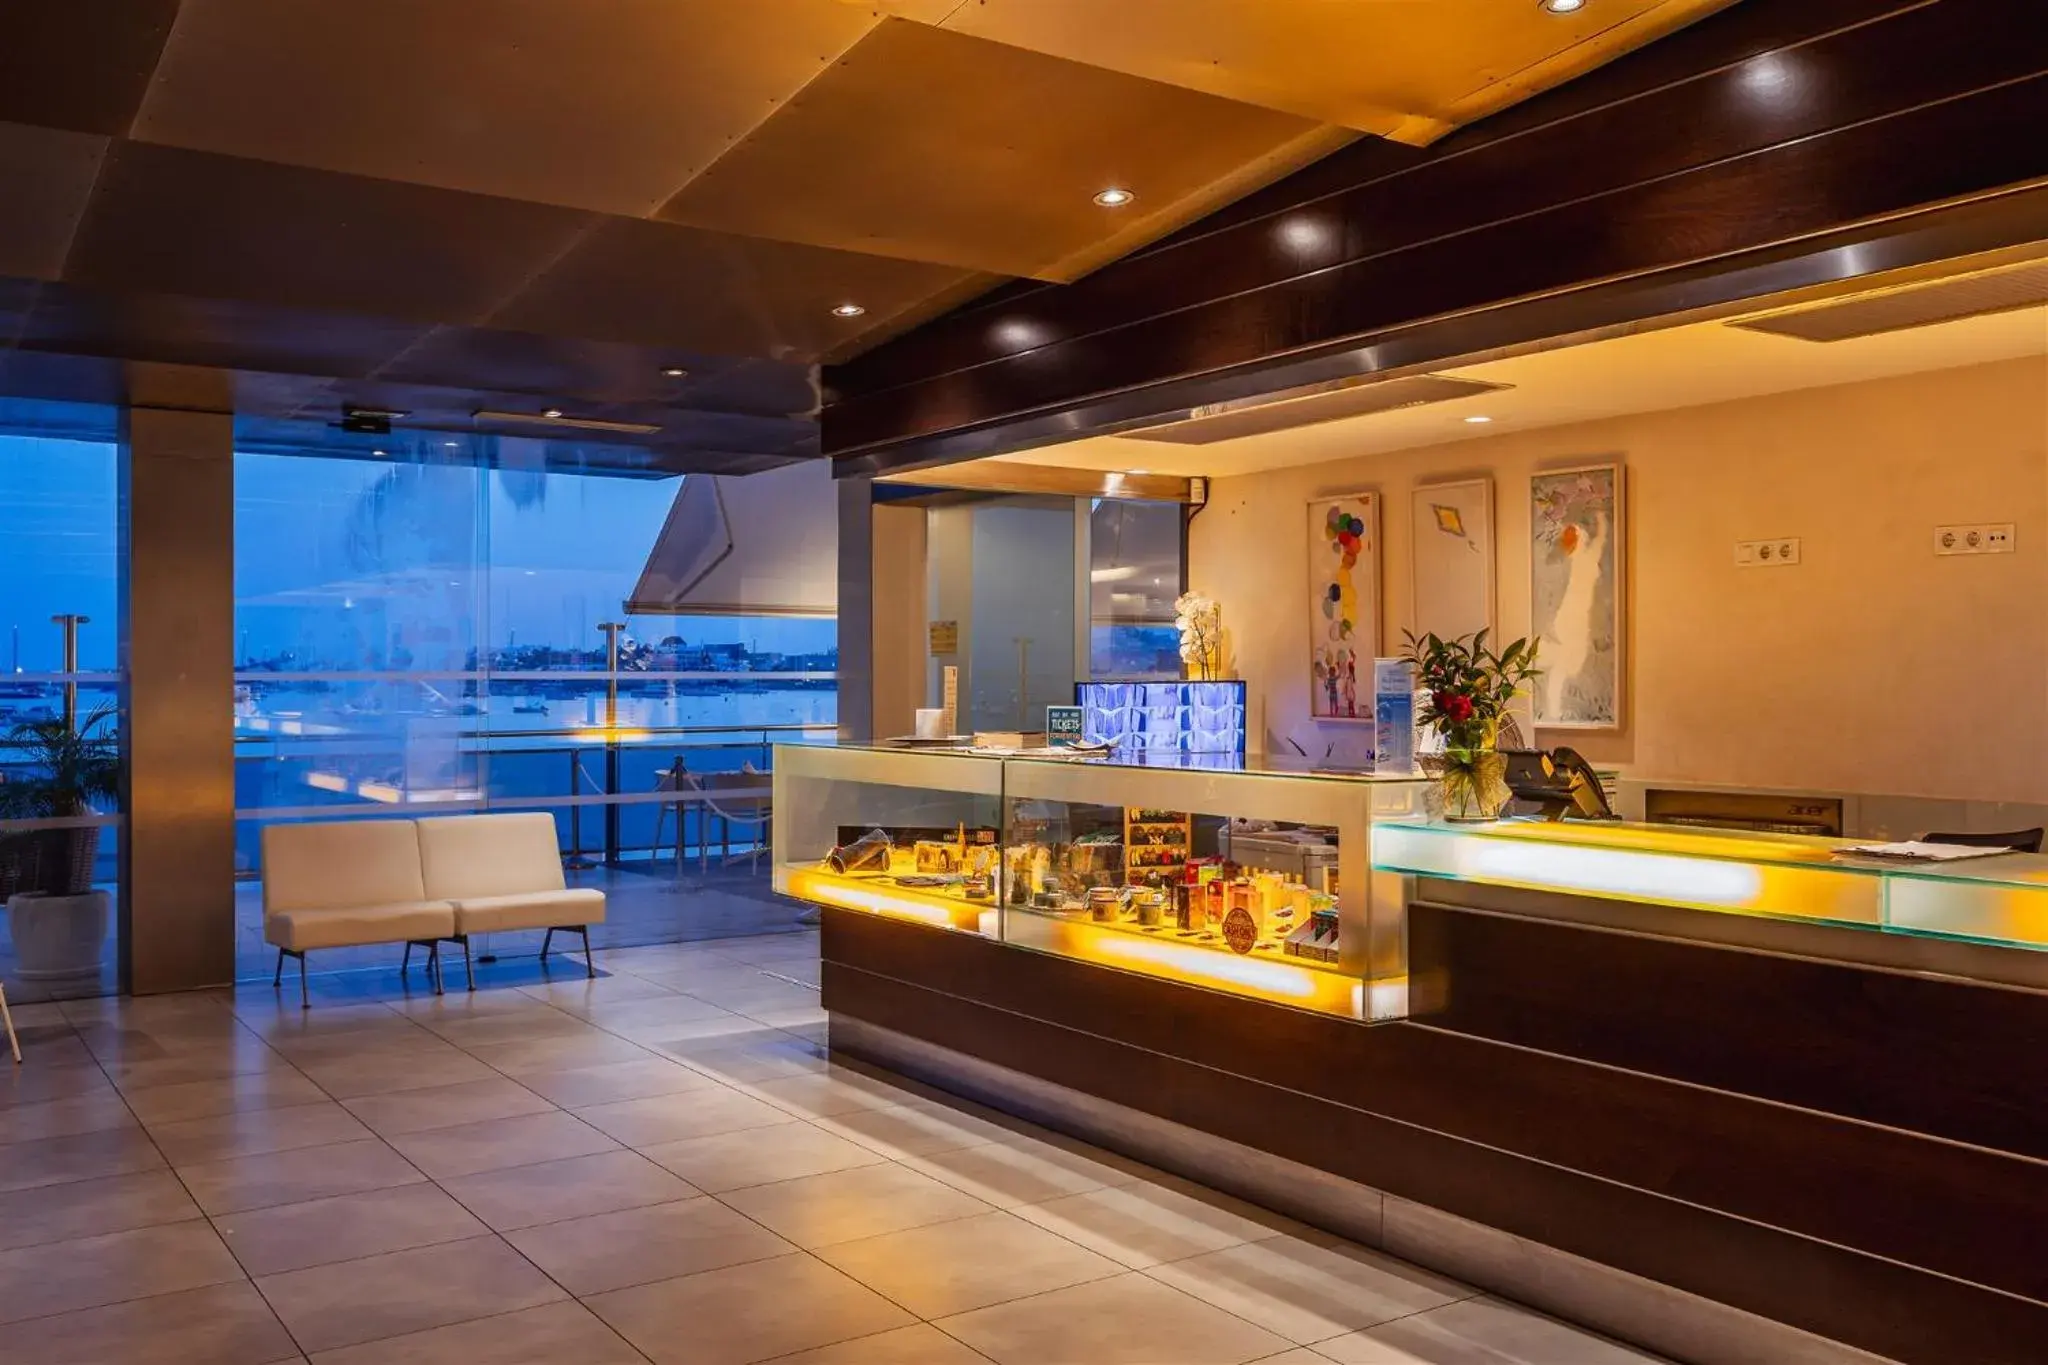 Lobby or reception in Hotel Simbad Ibiza & Spa